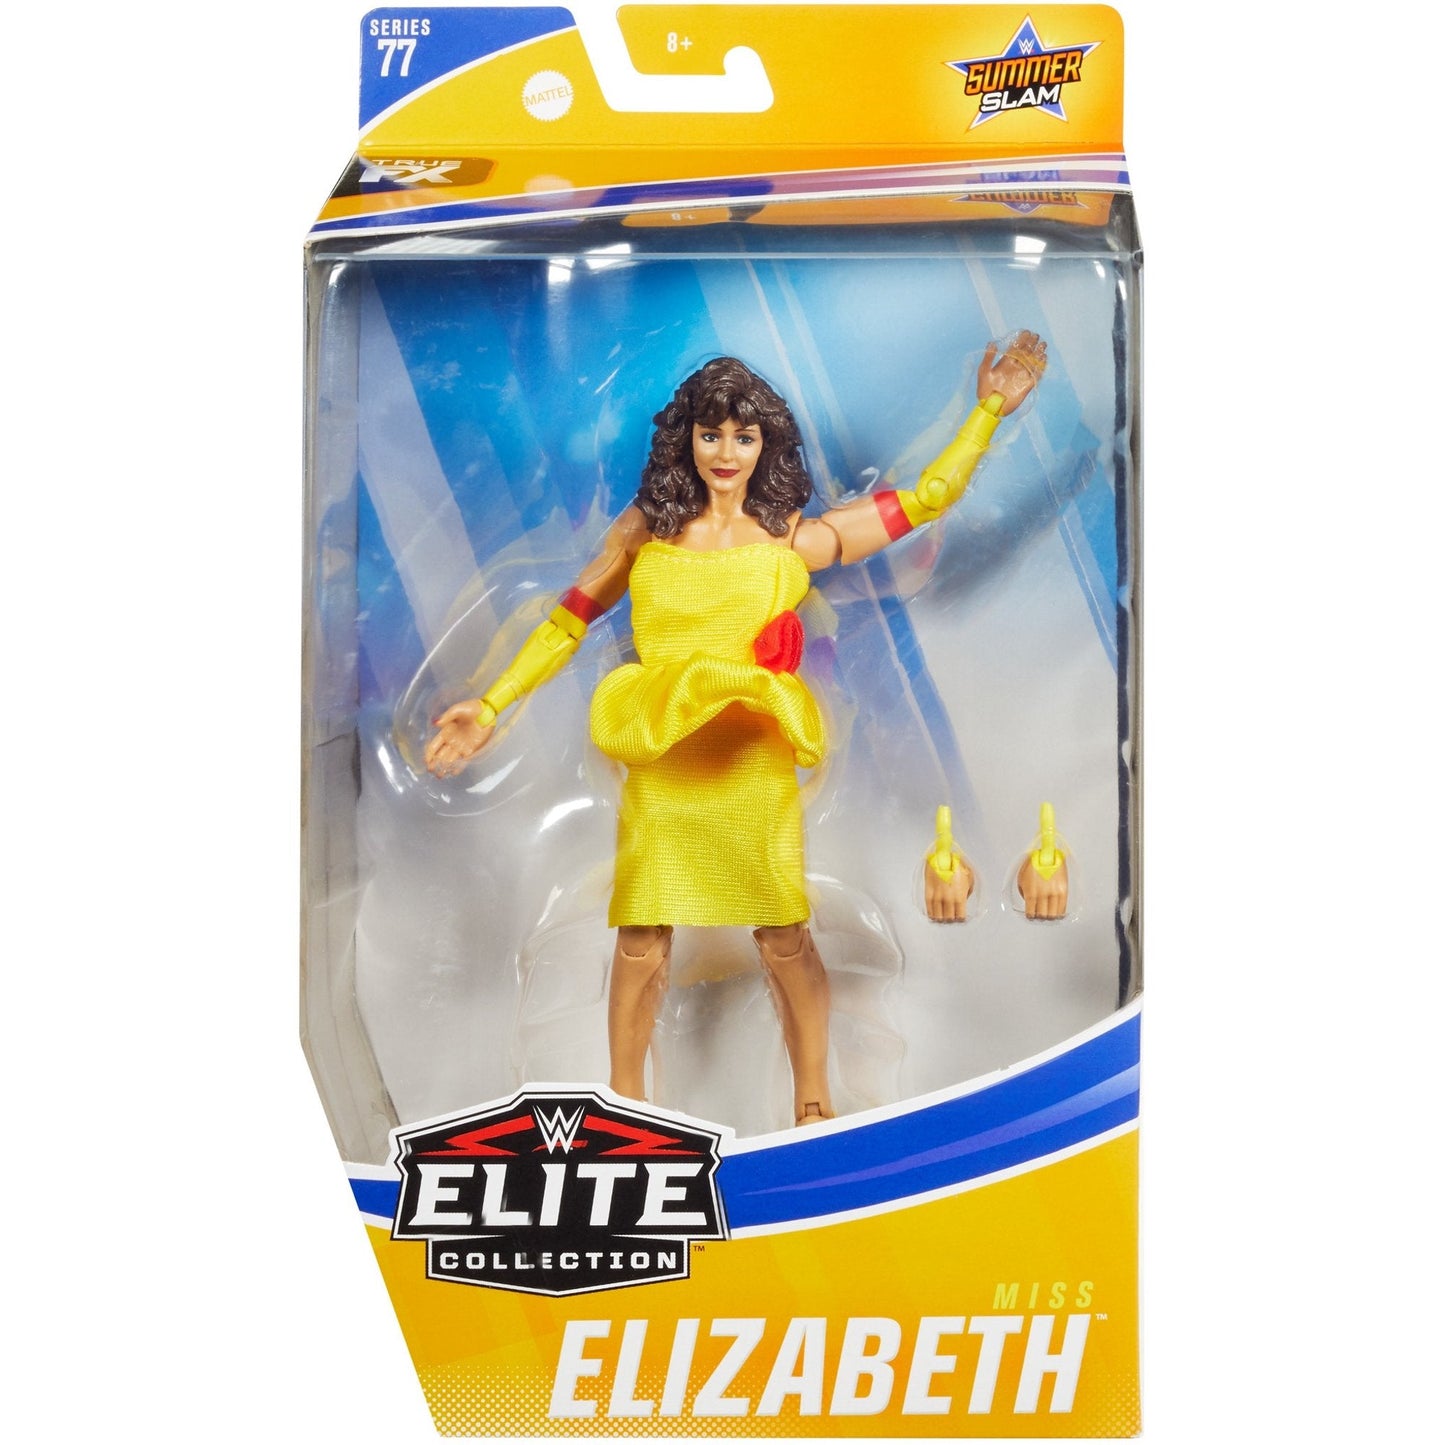 2020 WWE Mattel Elite Collection Series 77 Miss Elizabeth